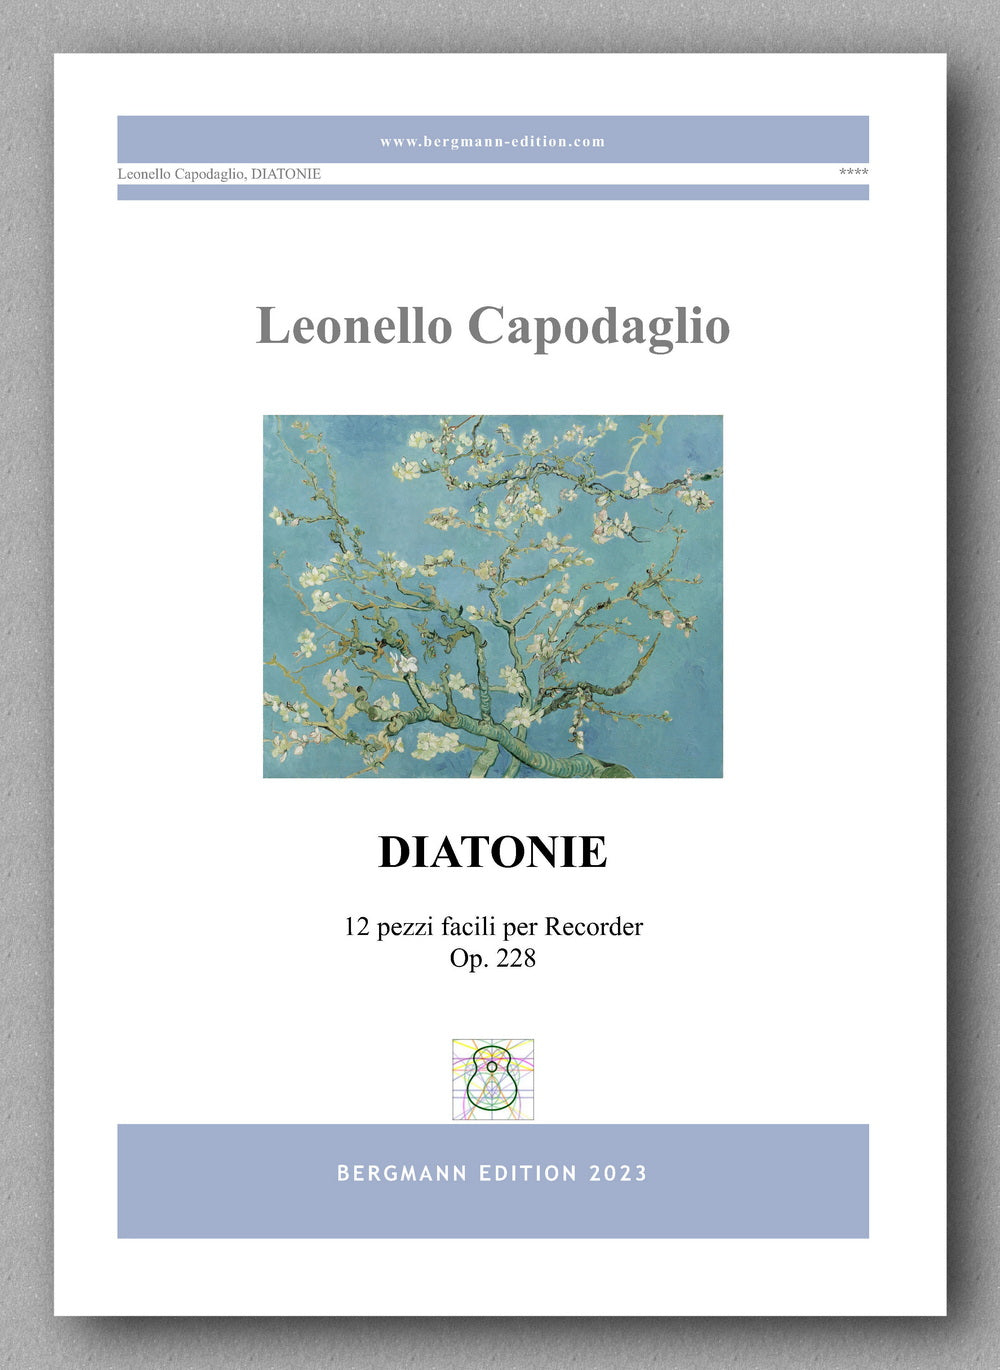 DIATONIE, Op. 228 by  Leonello Capodaglio - preview of the cover